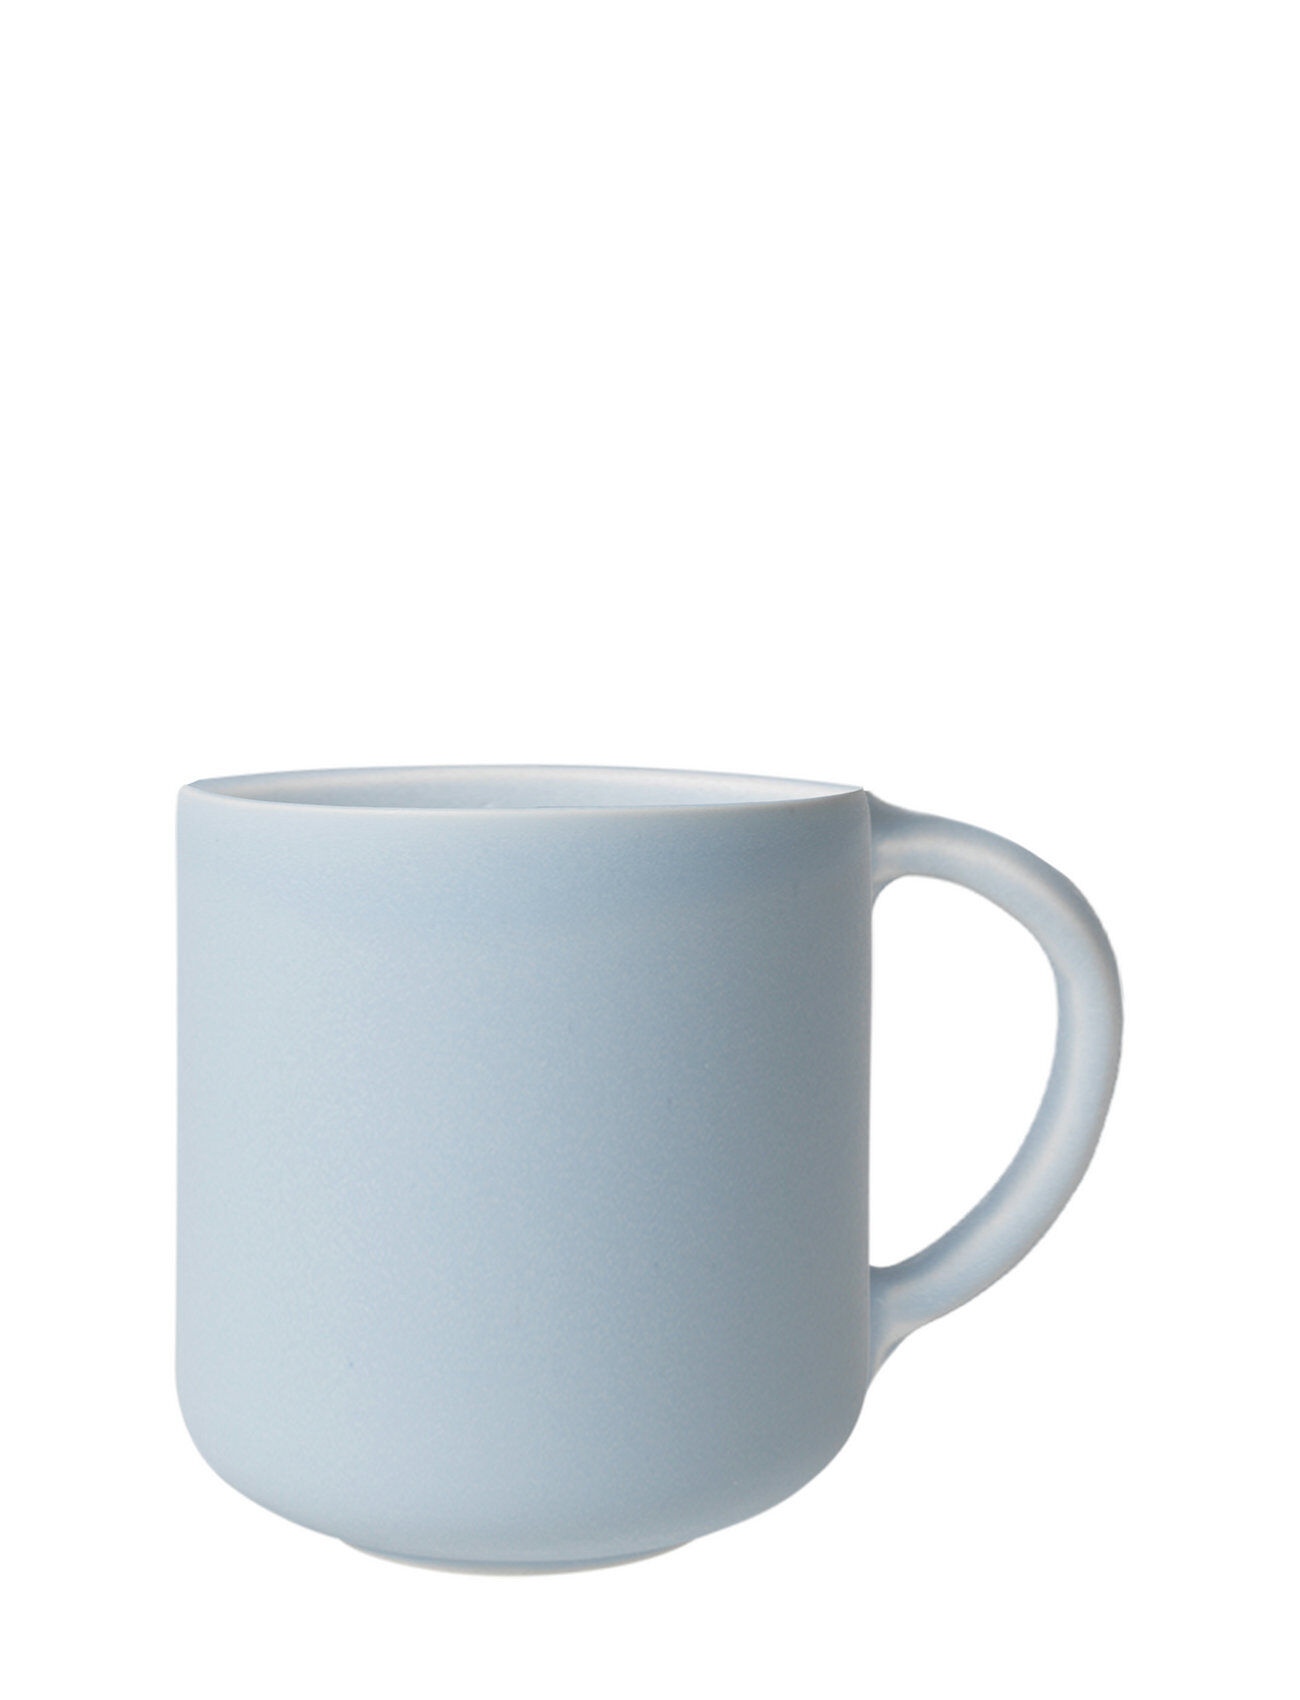 Louise Roe Ceramic Pisu #17 Espresso Cup Home Tableware Cups & Mugs Espresso Cups Blå Louise Roe